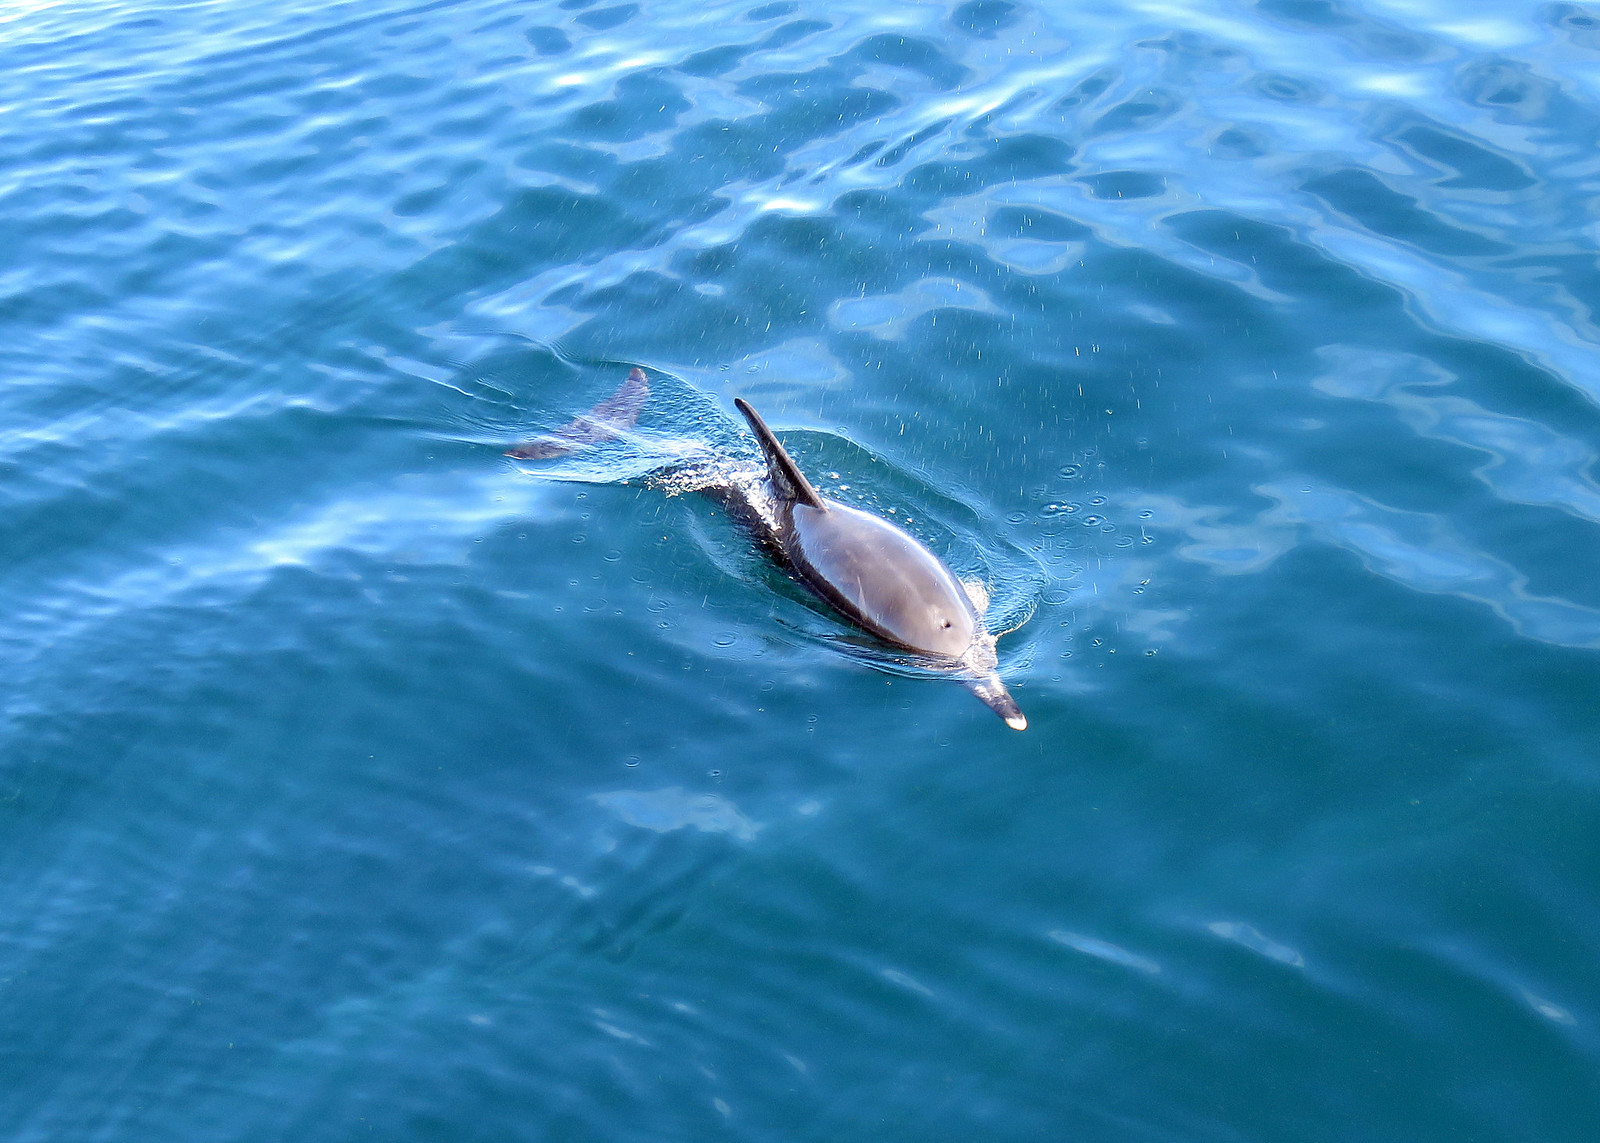 Common Dolphin - Delphinus delphis